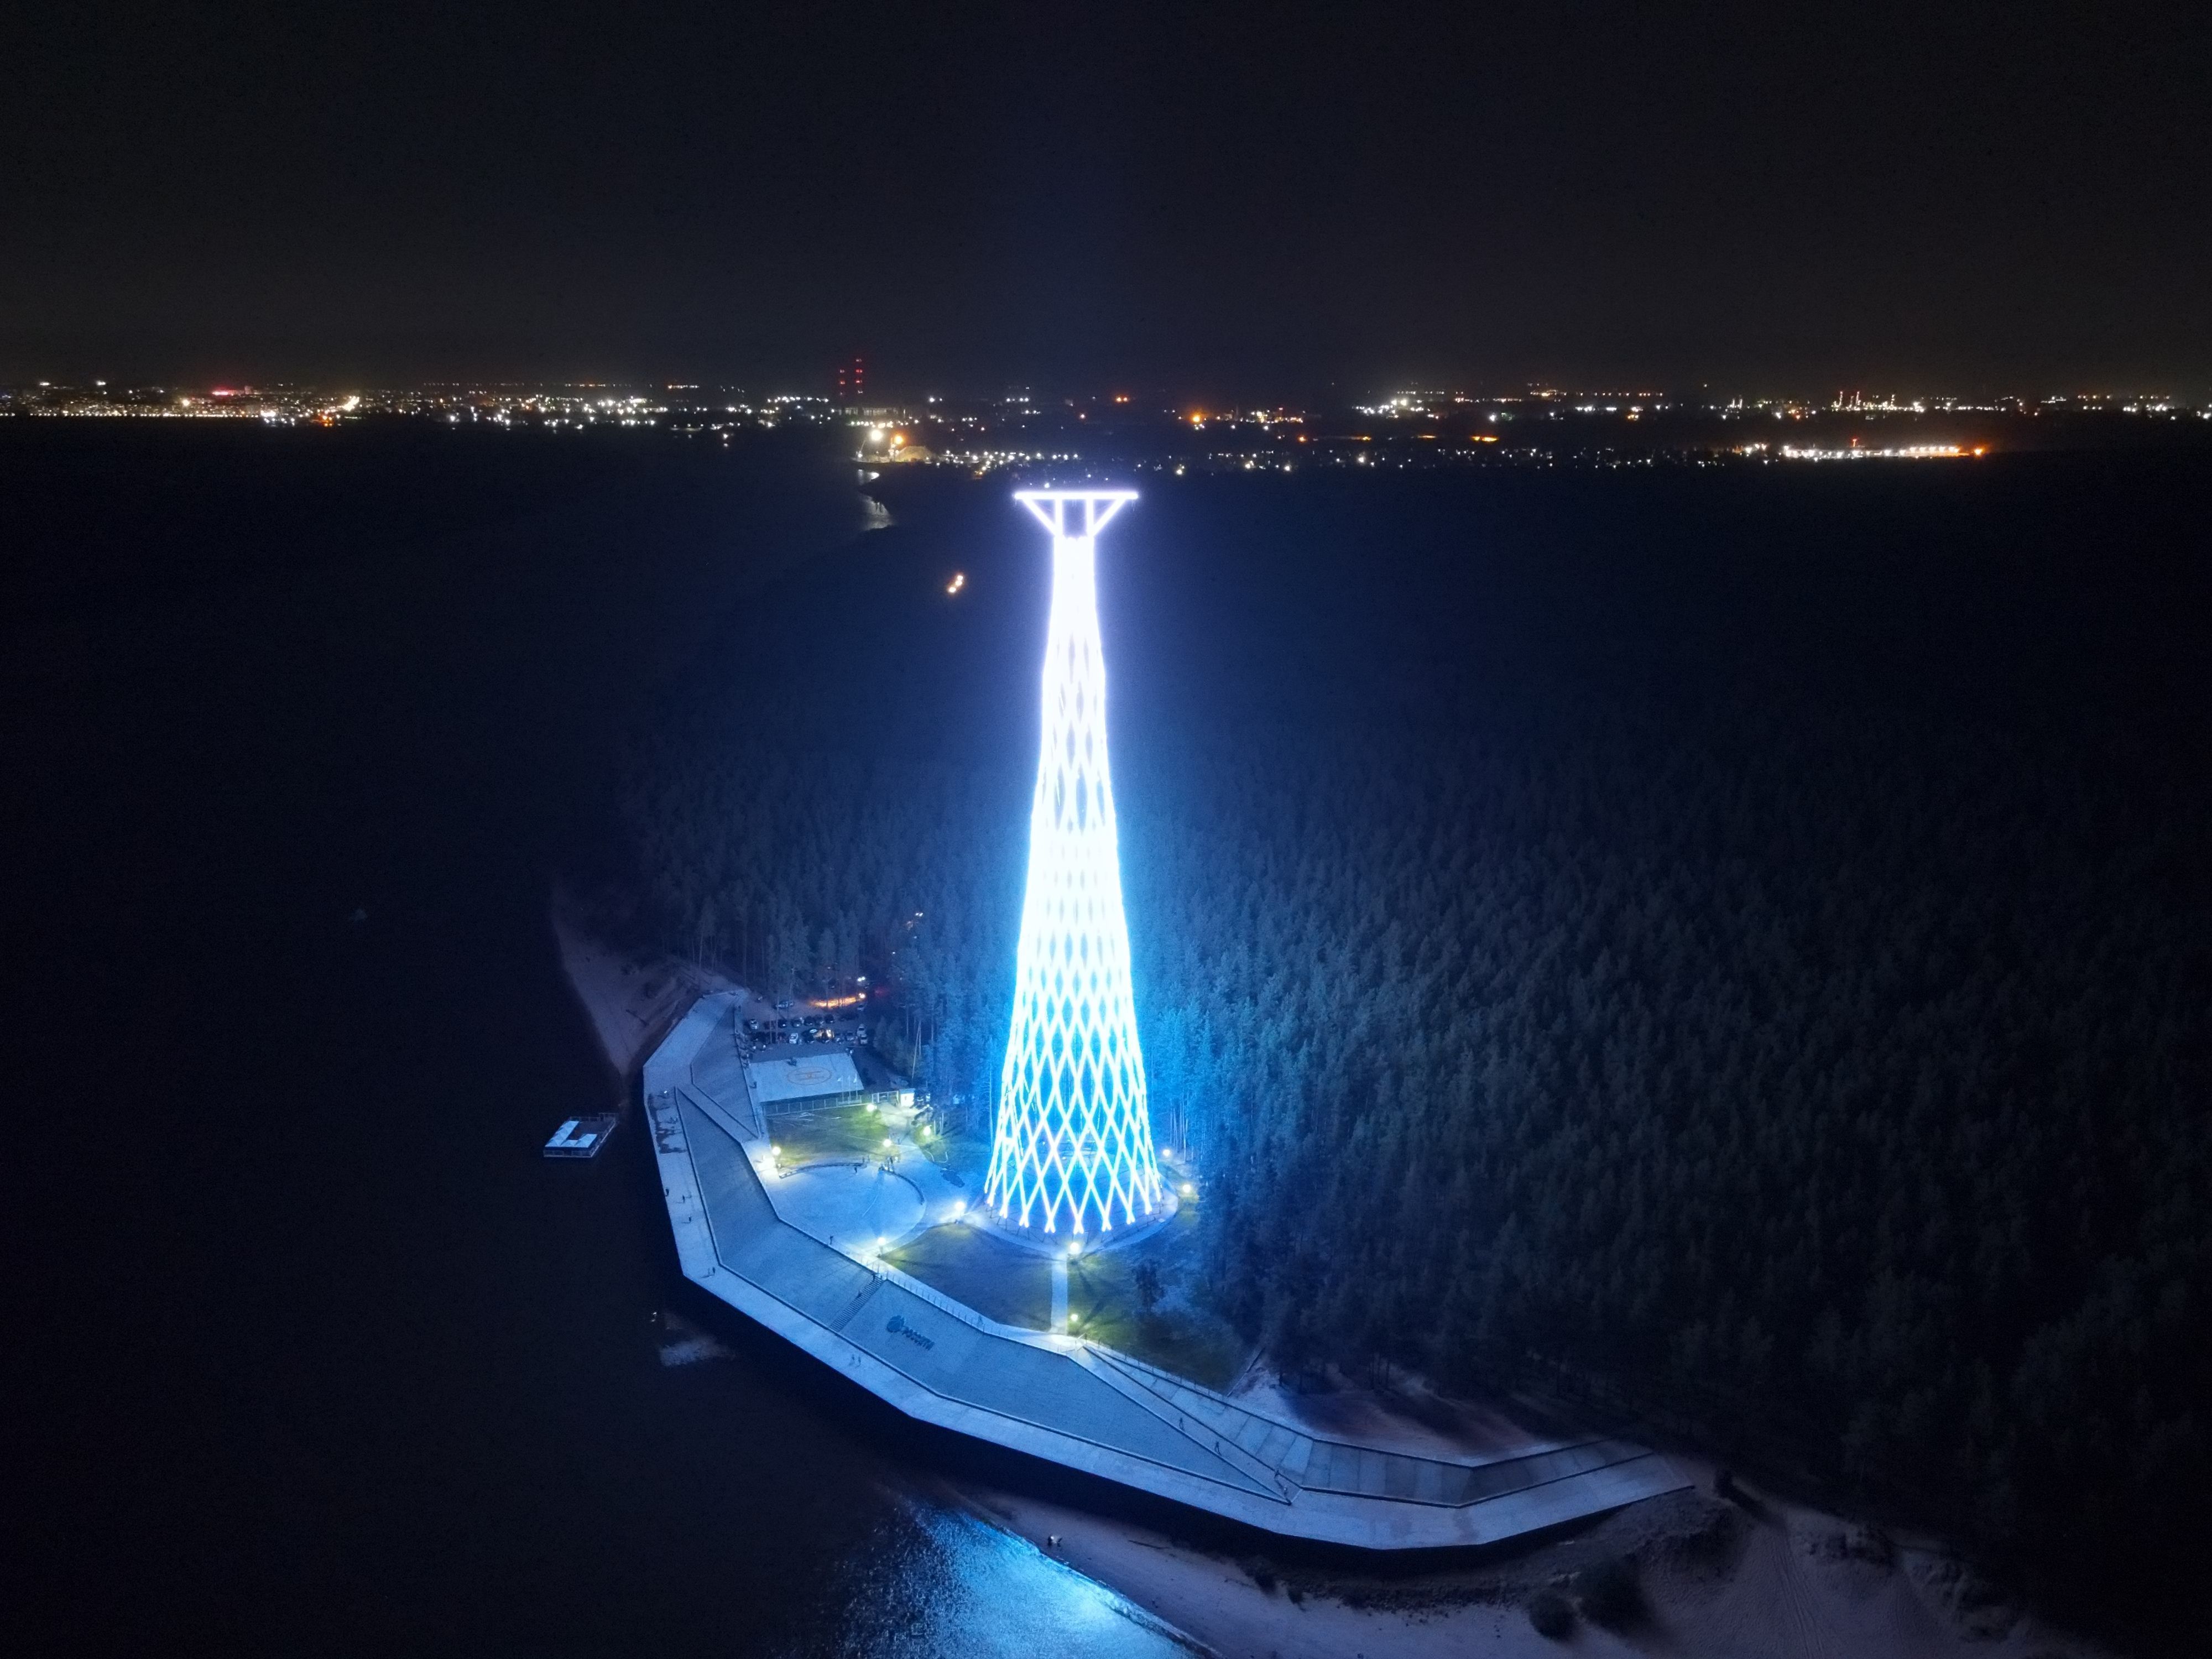 шуховская башня нижегородская область